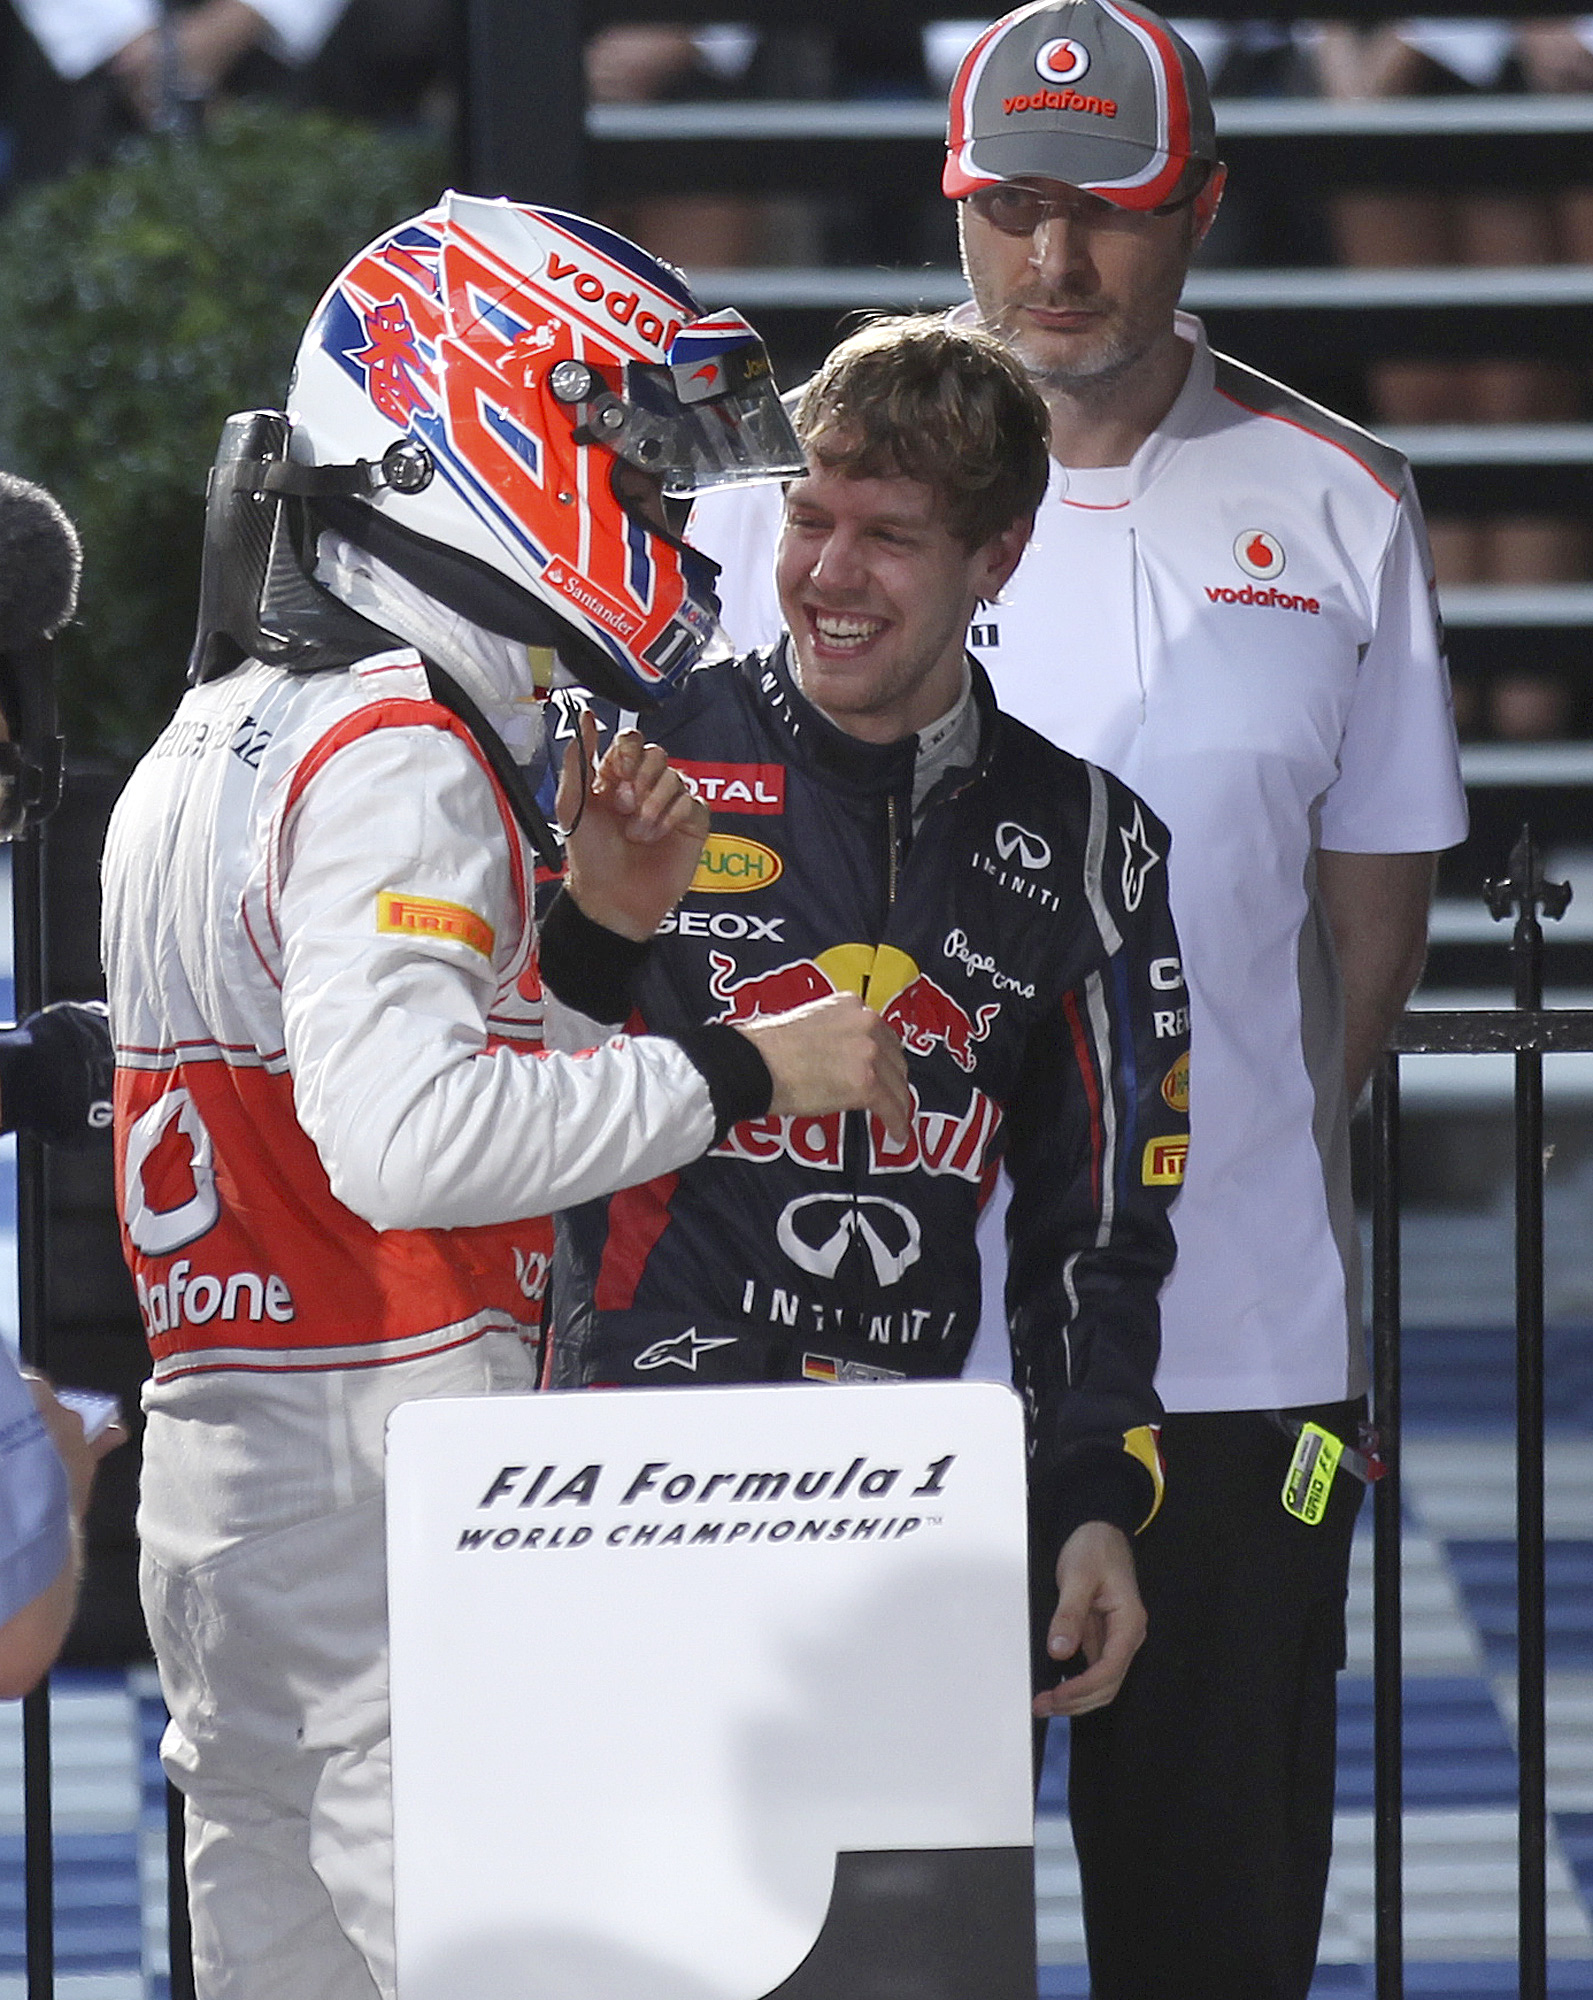 Vettel gratulerar Button till segern. Förra året var det omvända positioner då Vettel vann och Button blev tvåa när säsongen summerades.